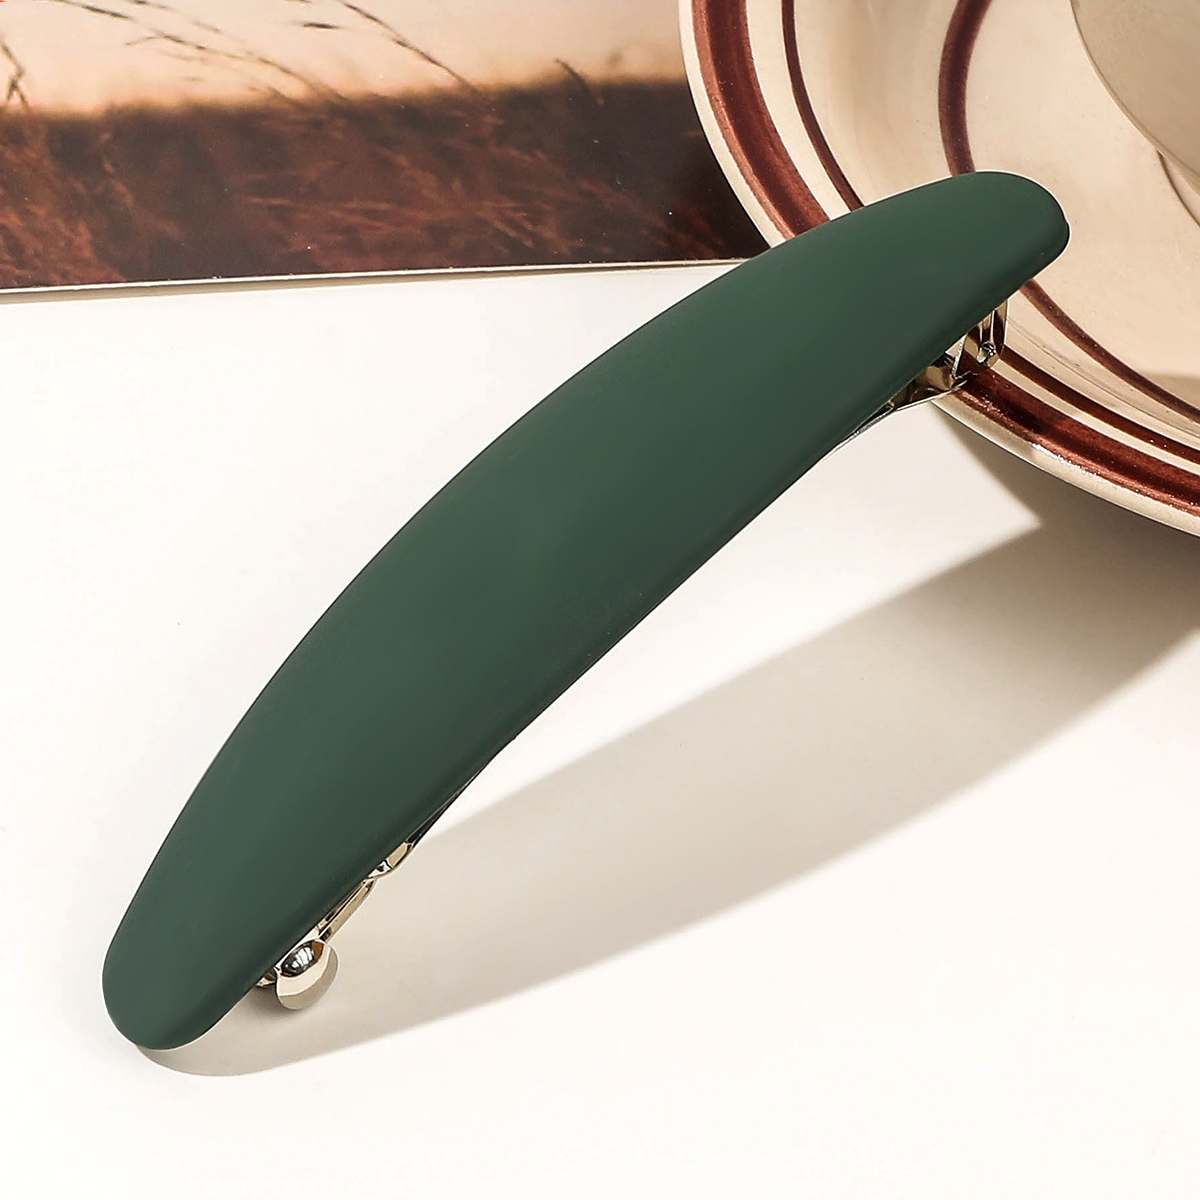 10.5cm oval spring clamp - dark green